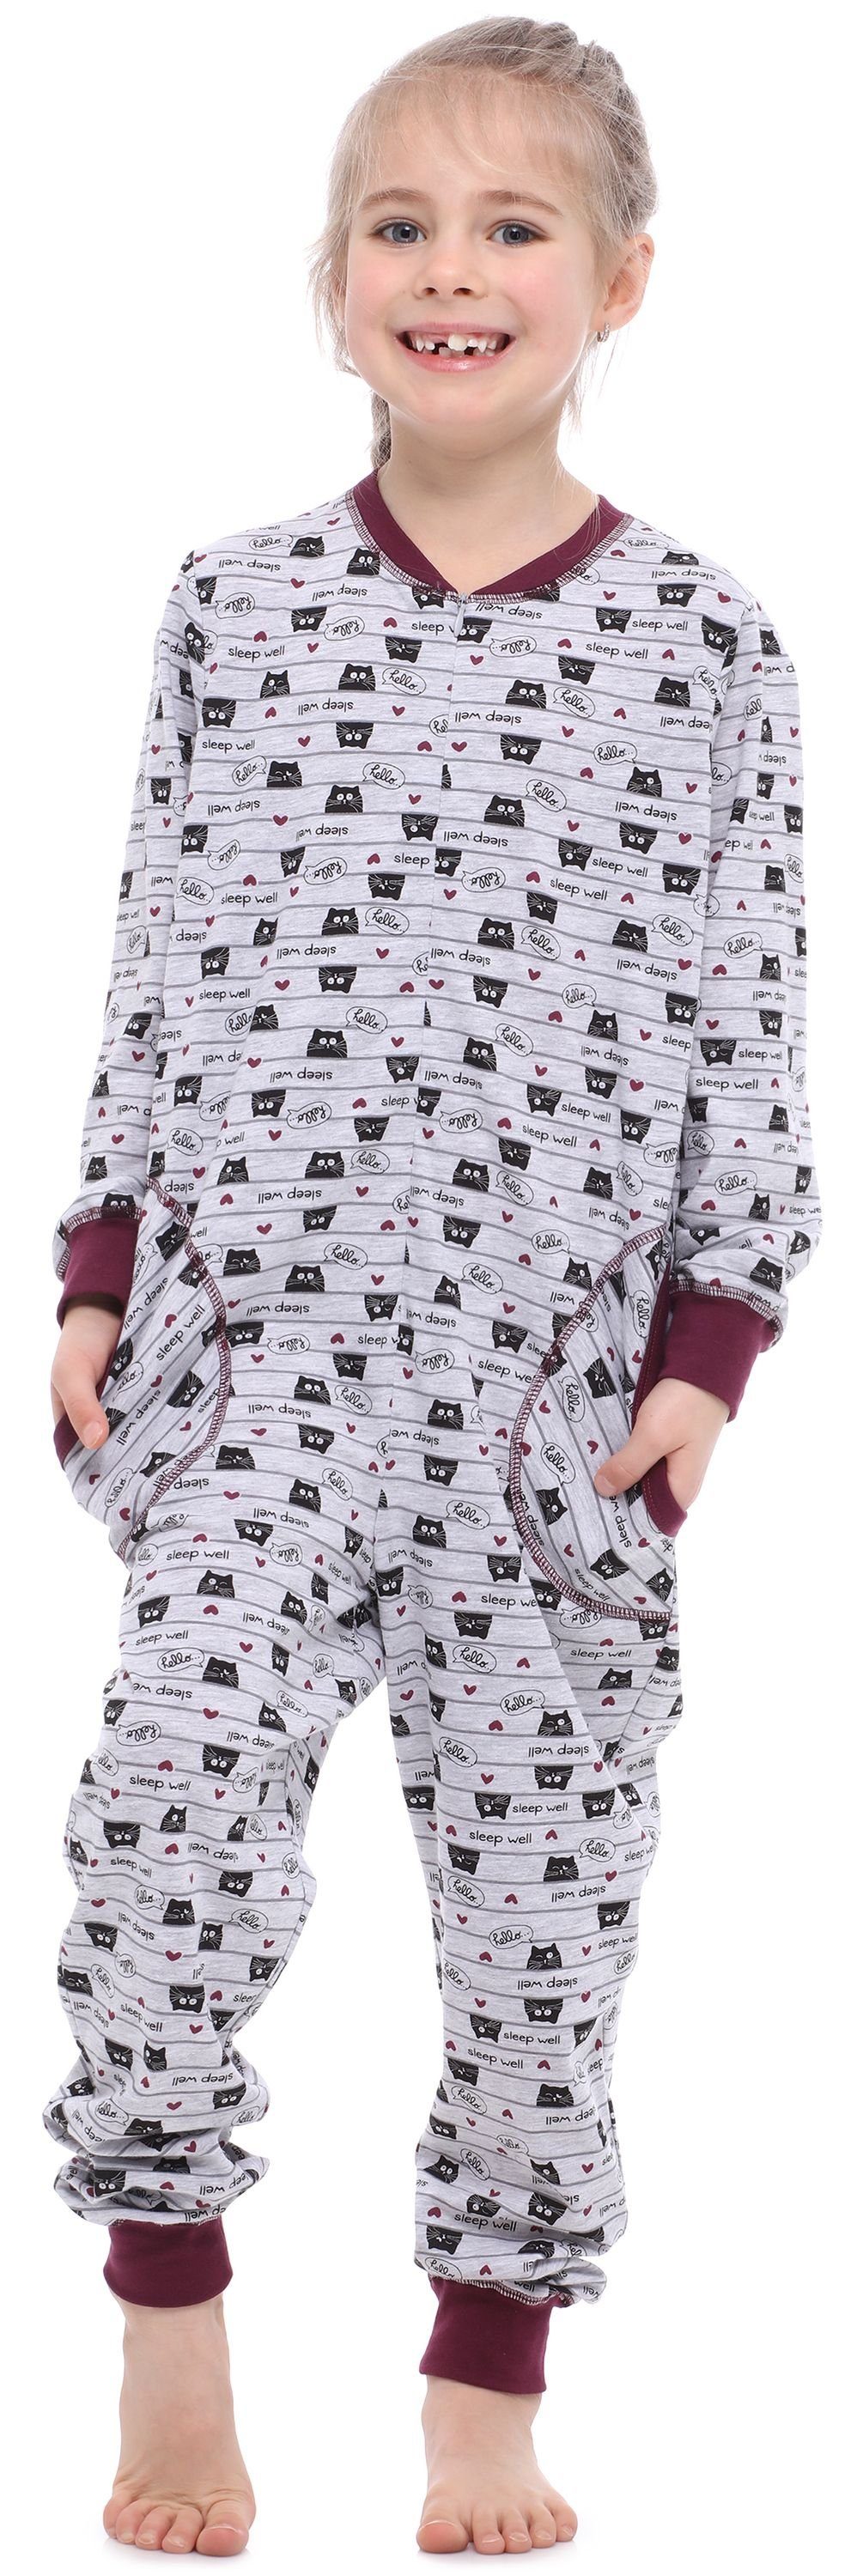 Katzen Schlafanzug Style Merry MS10-186 Mädchen Schlafanzug Melange Wein Jumpsuit